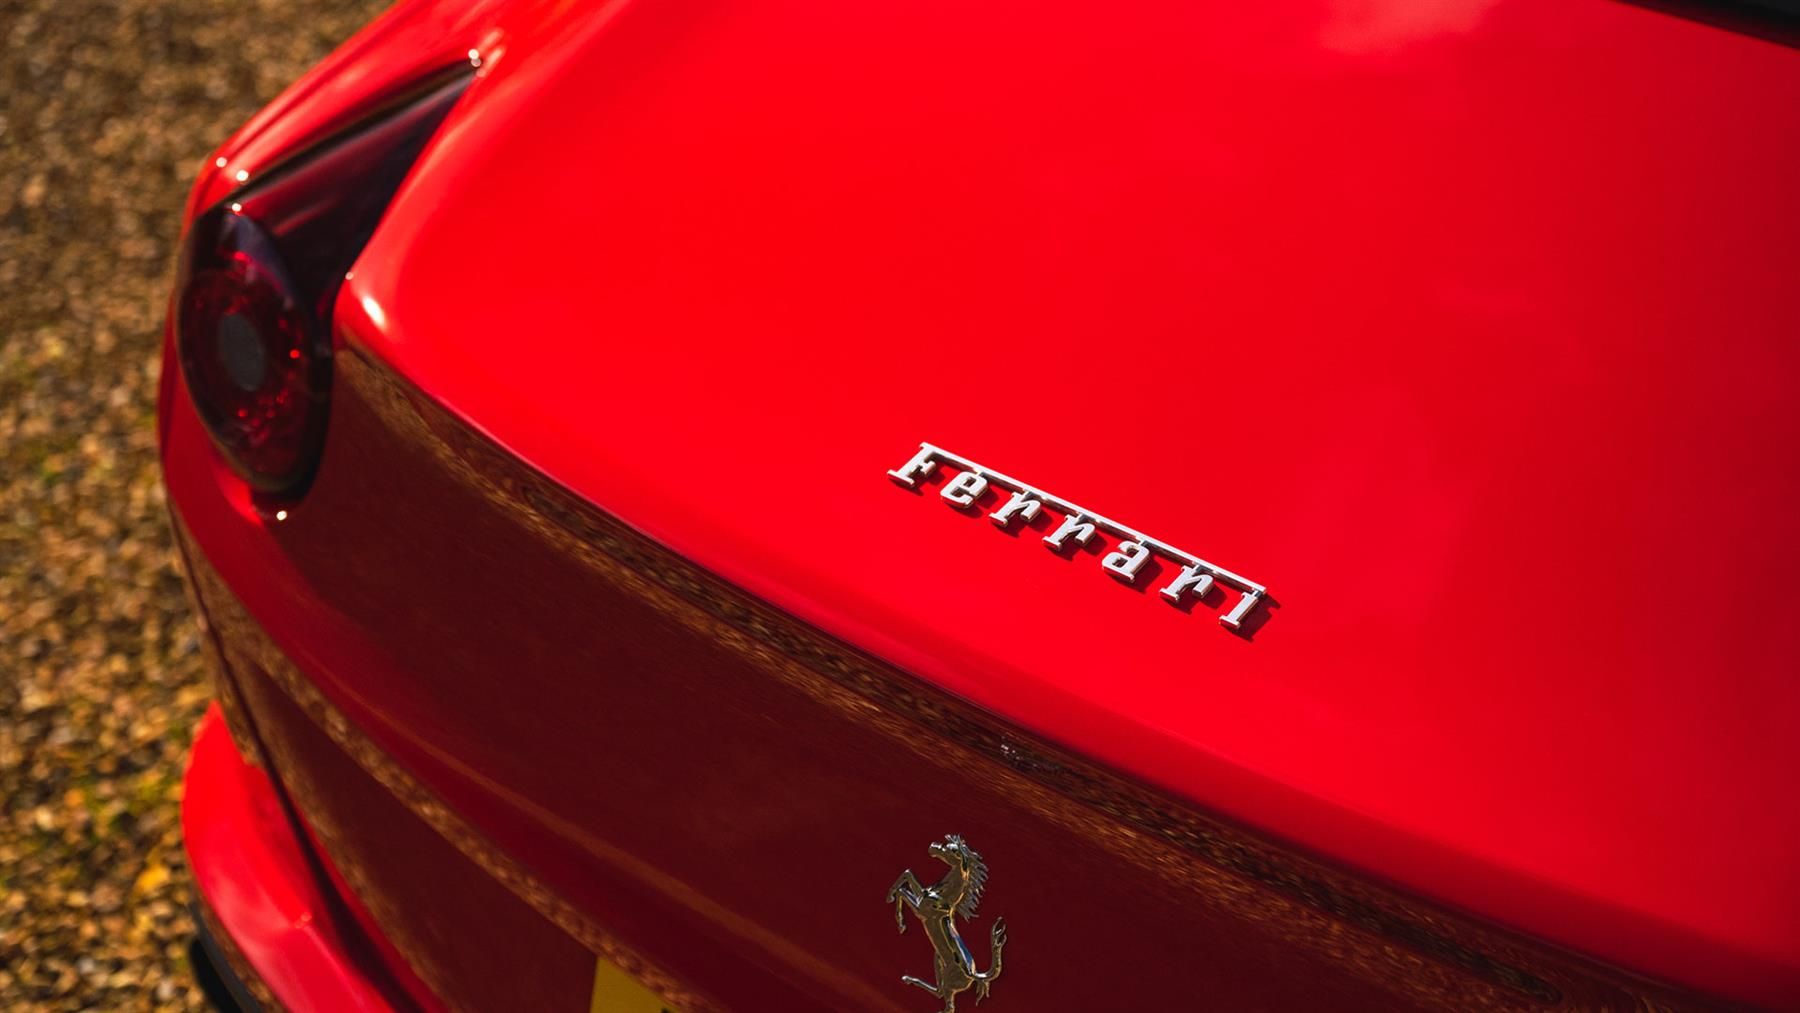 2015 Ferrari